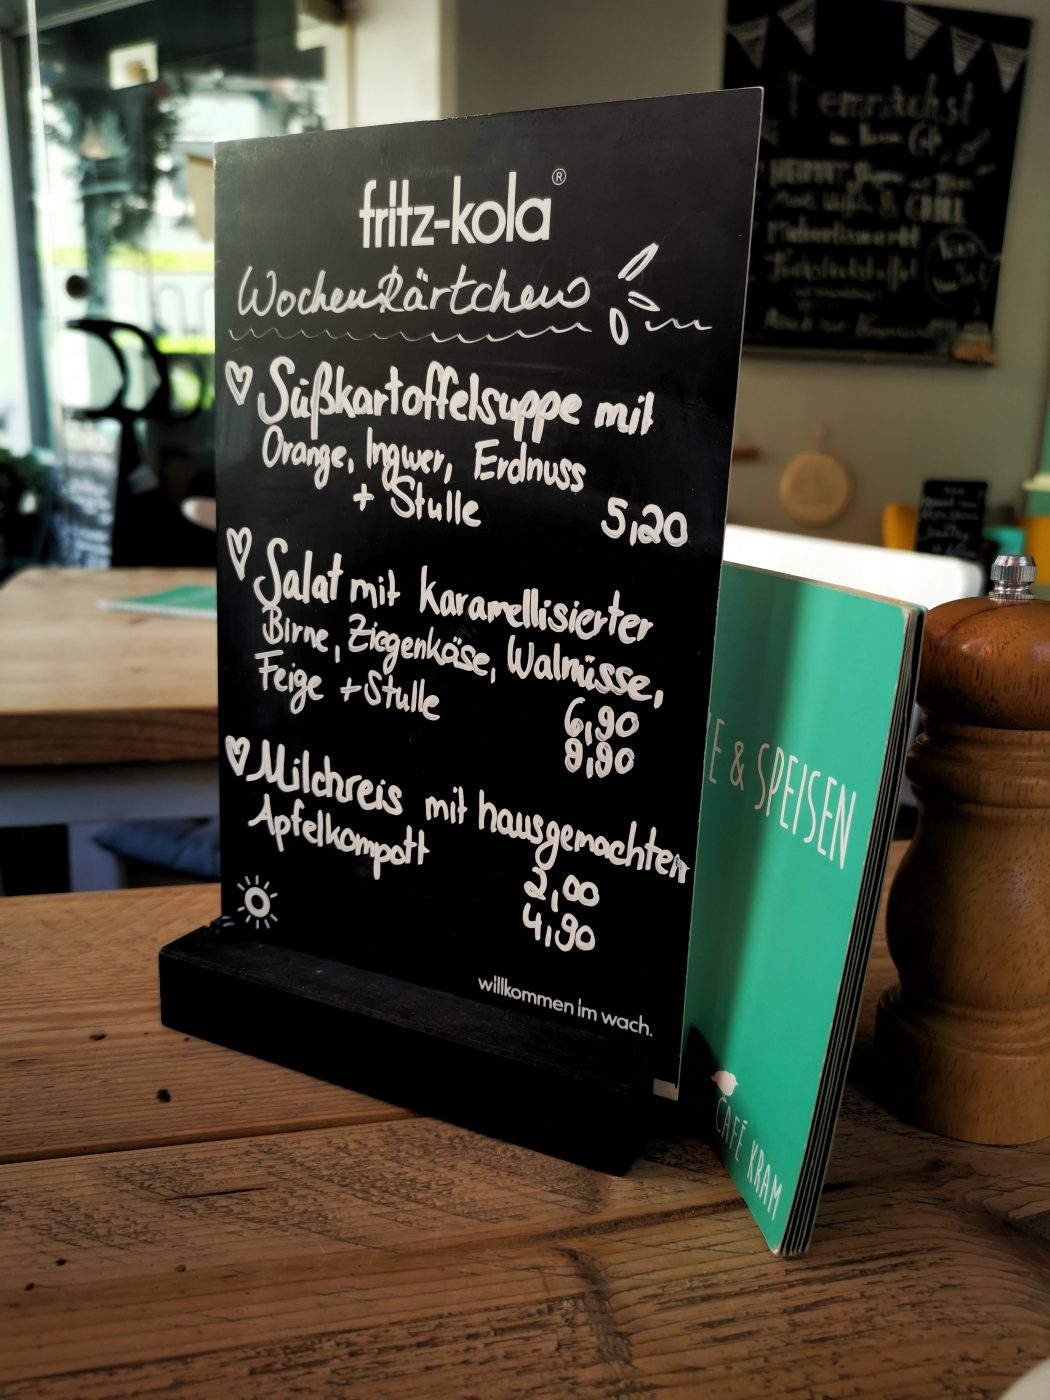 Das Bild zeigt die Wochenkarte des Café Kram in Bottrop